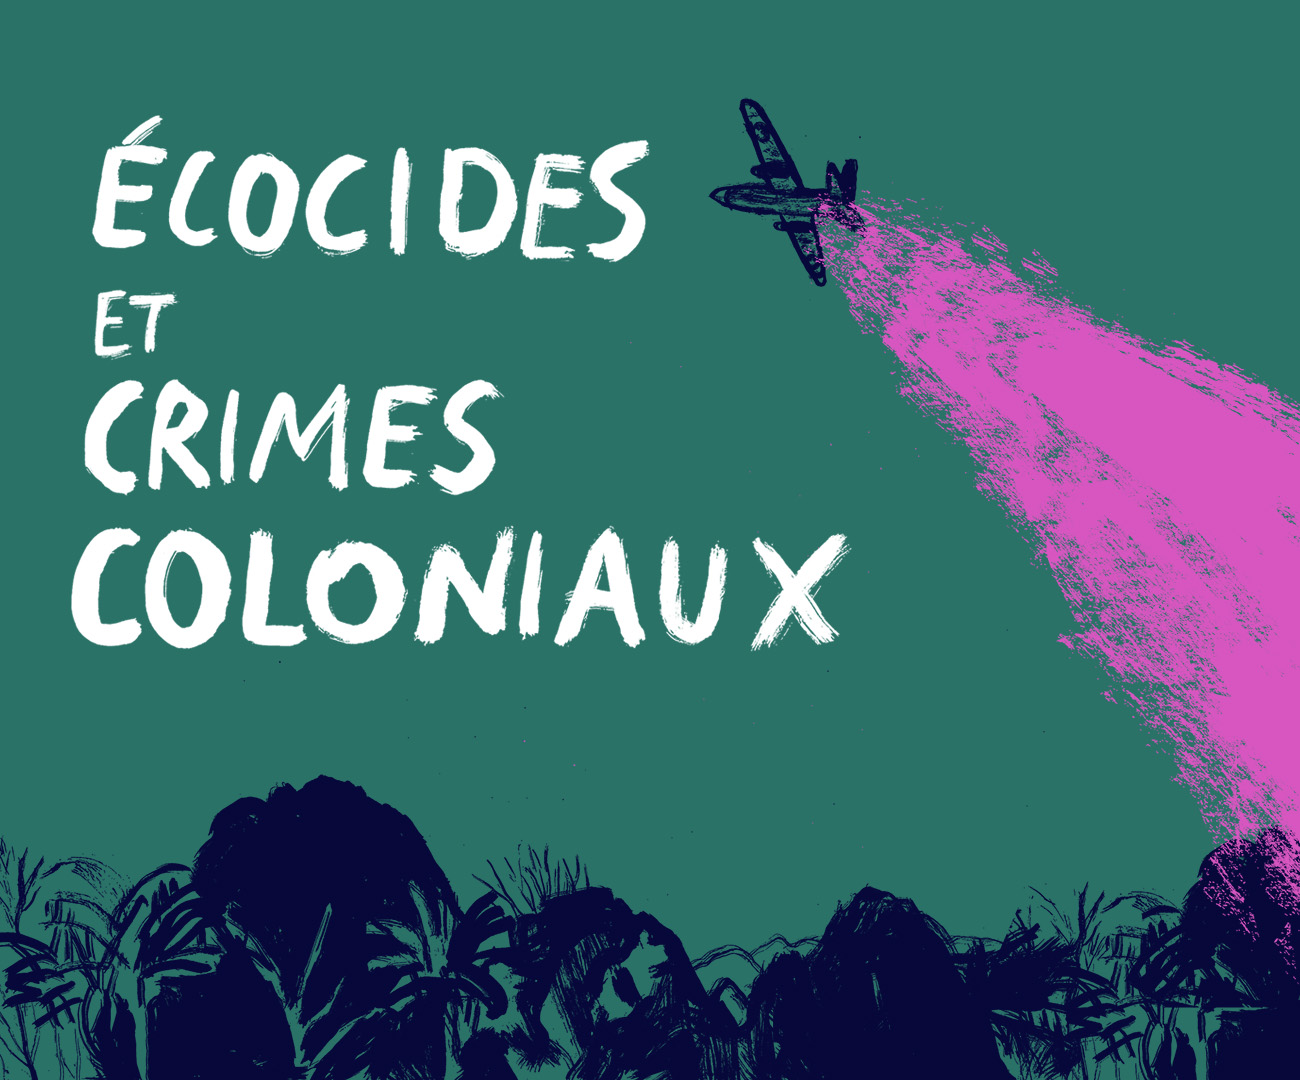 Écocides et crimes coloniaux © Benoît Guillaume